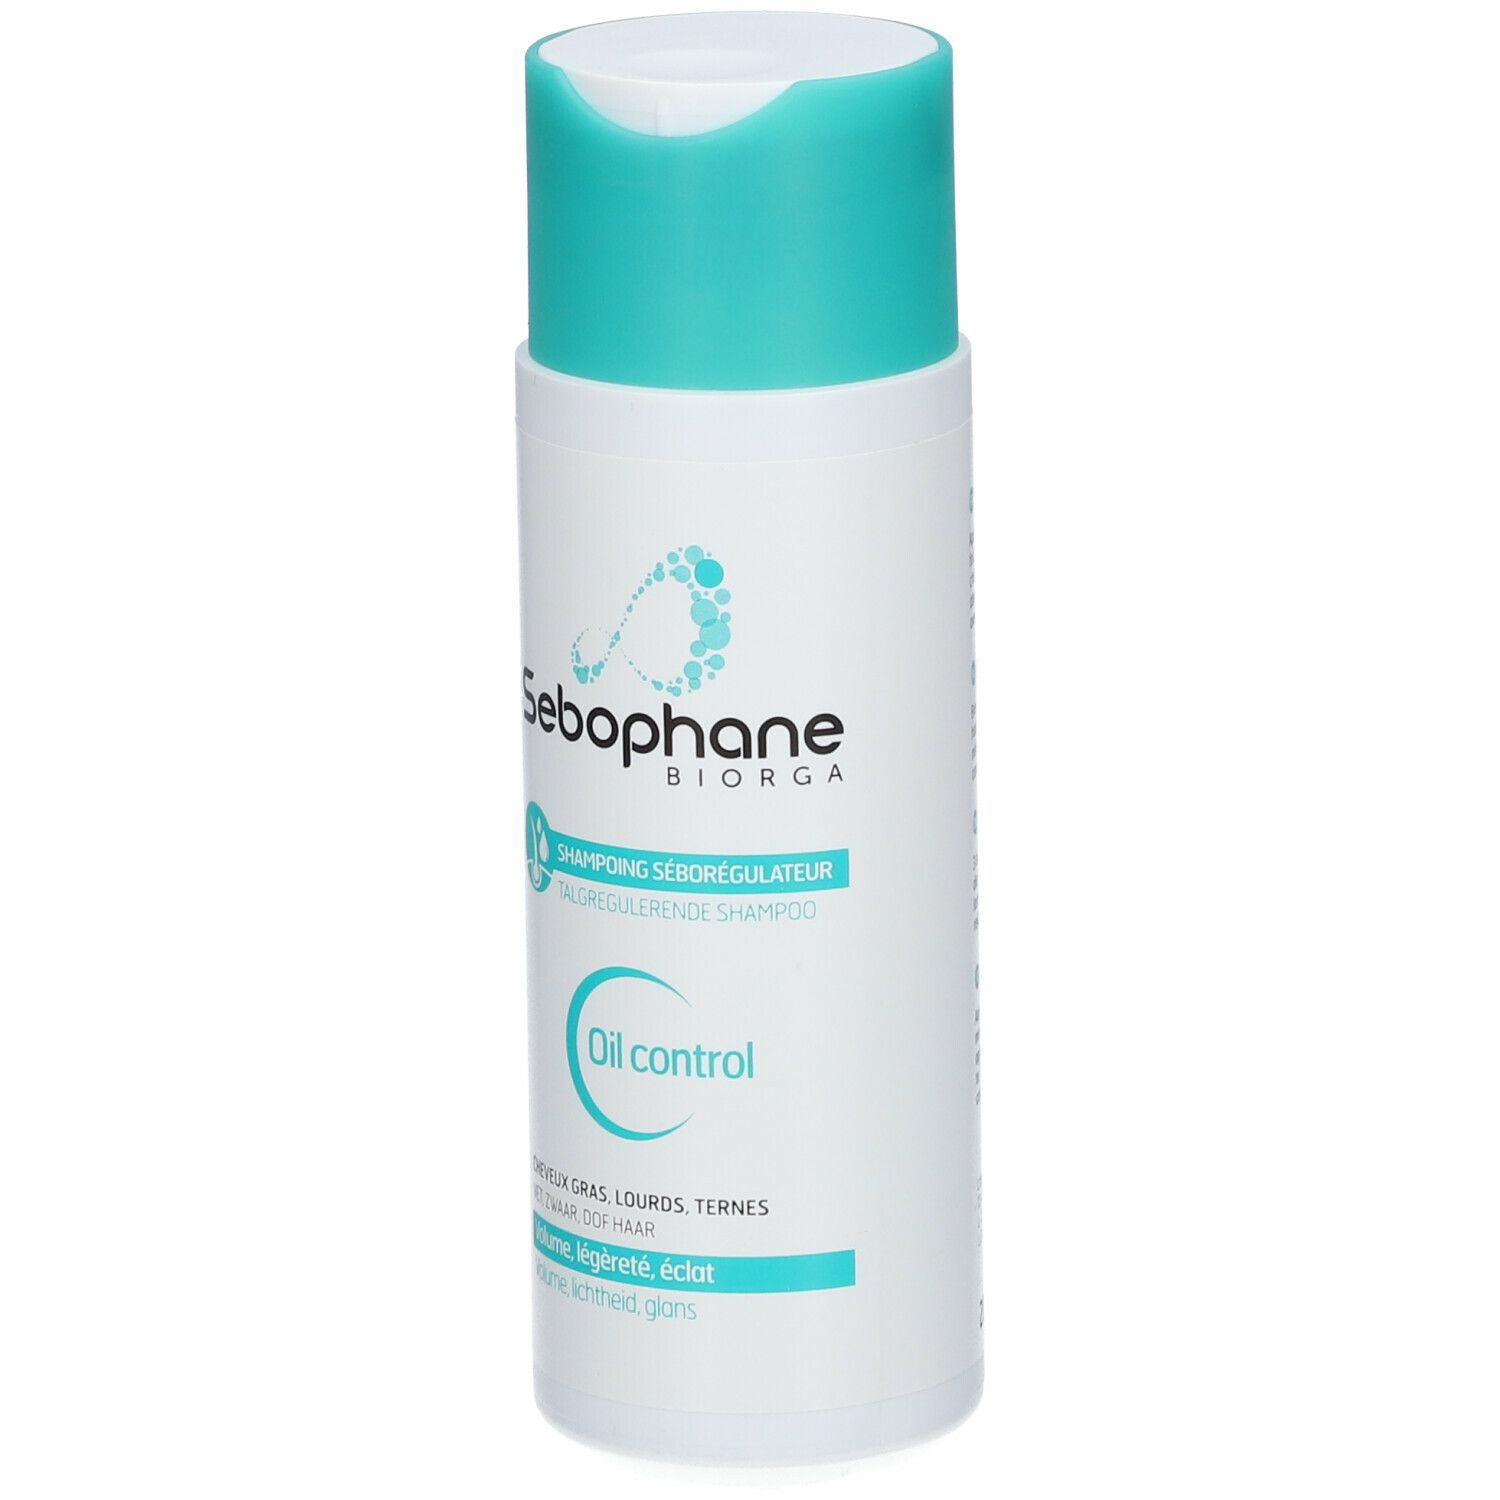 Sebophane Shampoo Seboregulerend